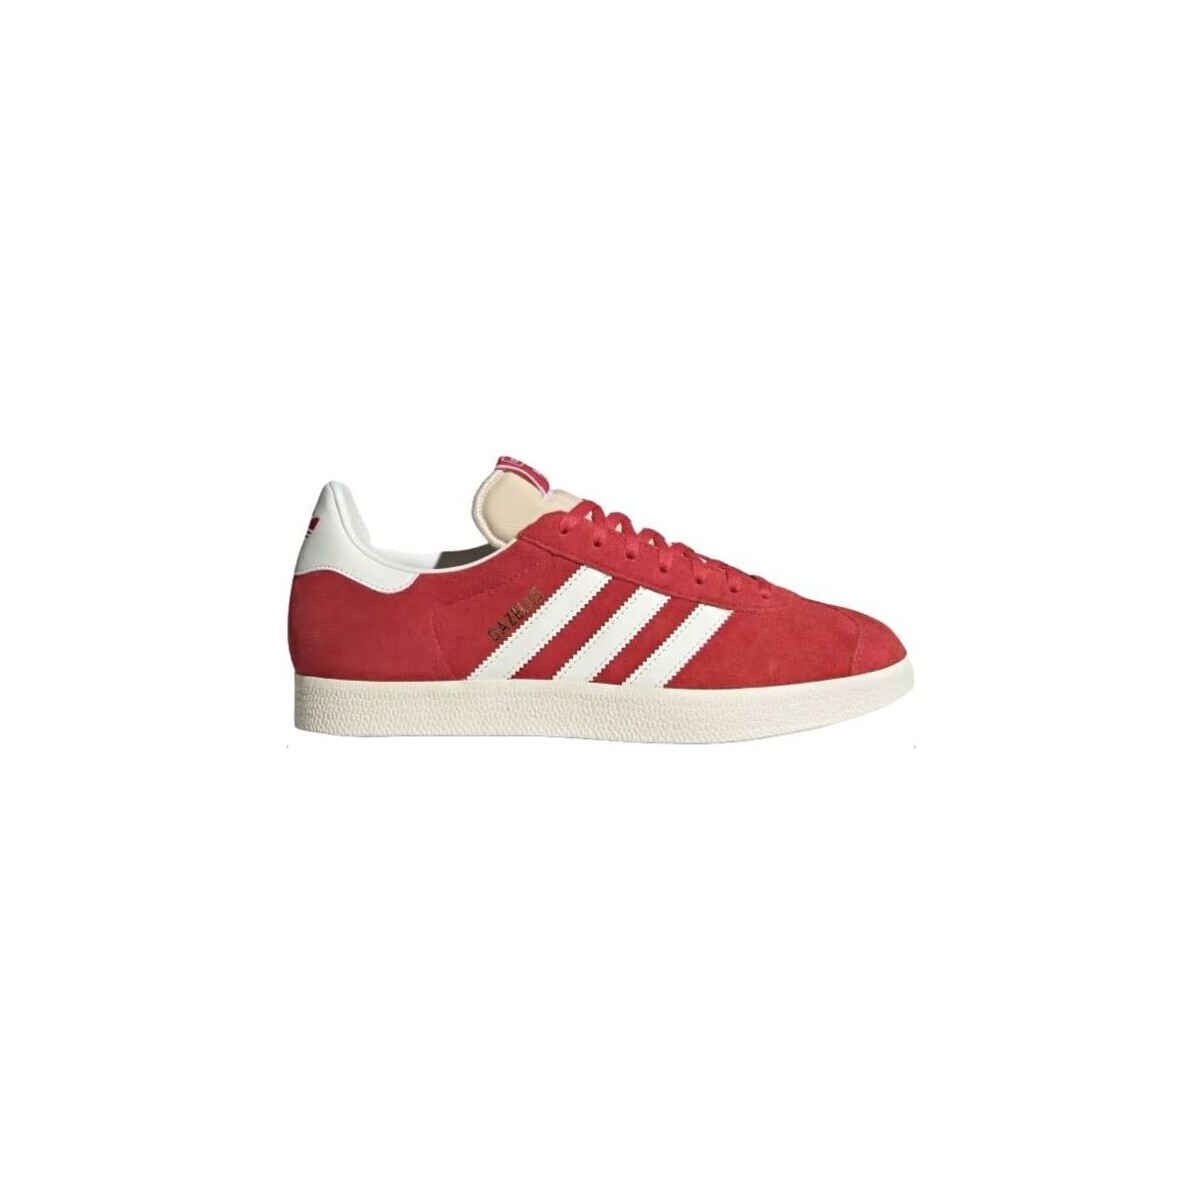 adidas Originals Rouge Baskets Gazelle Glory Red/Off White/Cream White ue6HnjpD